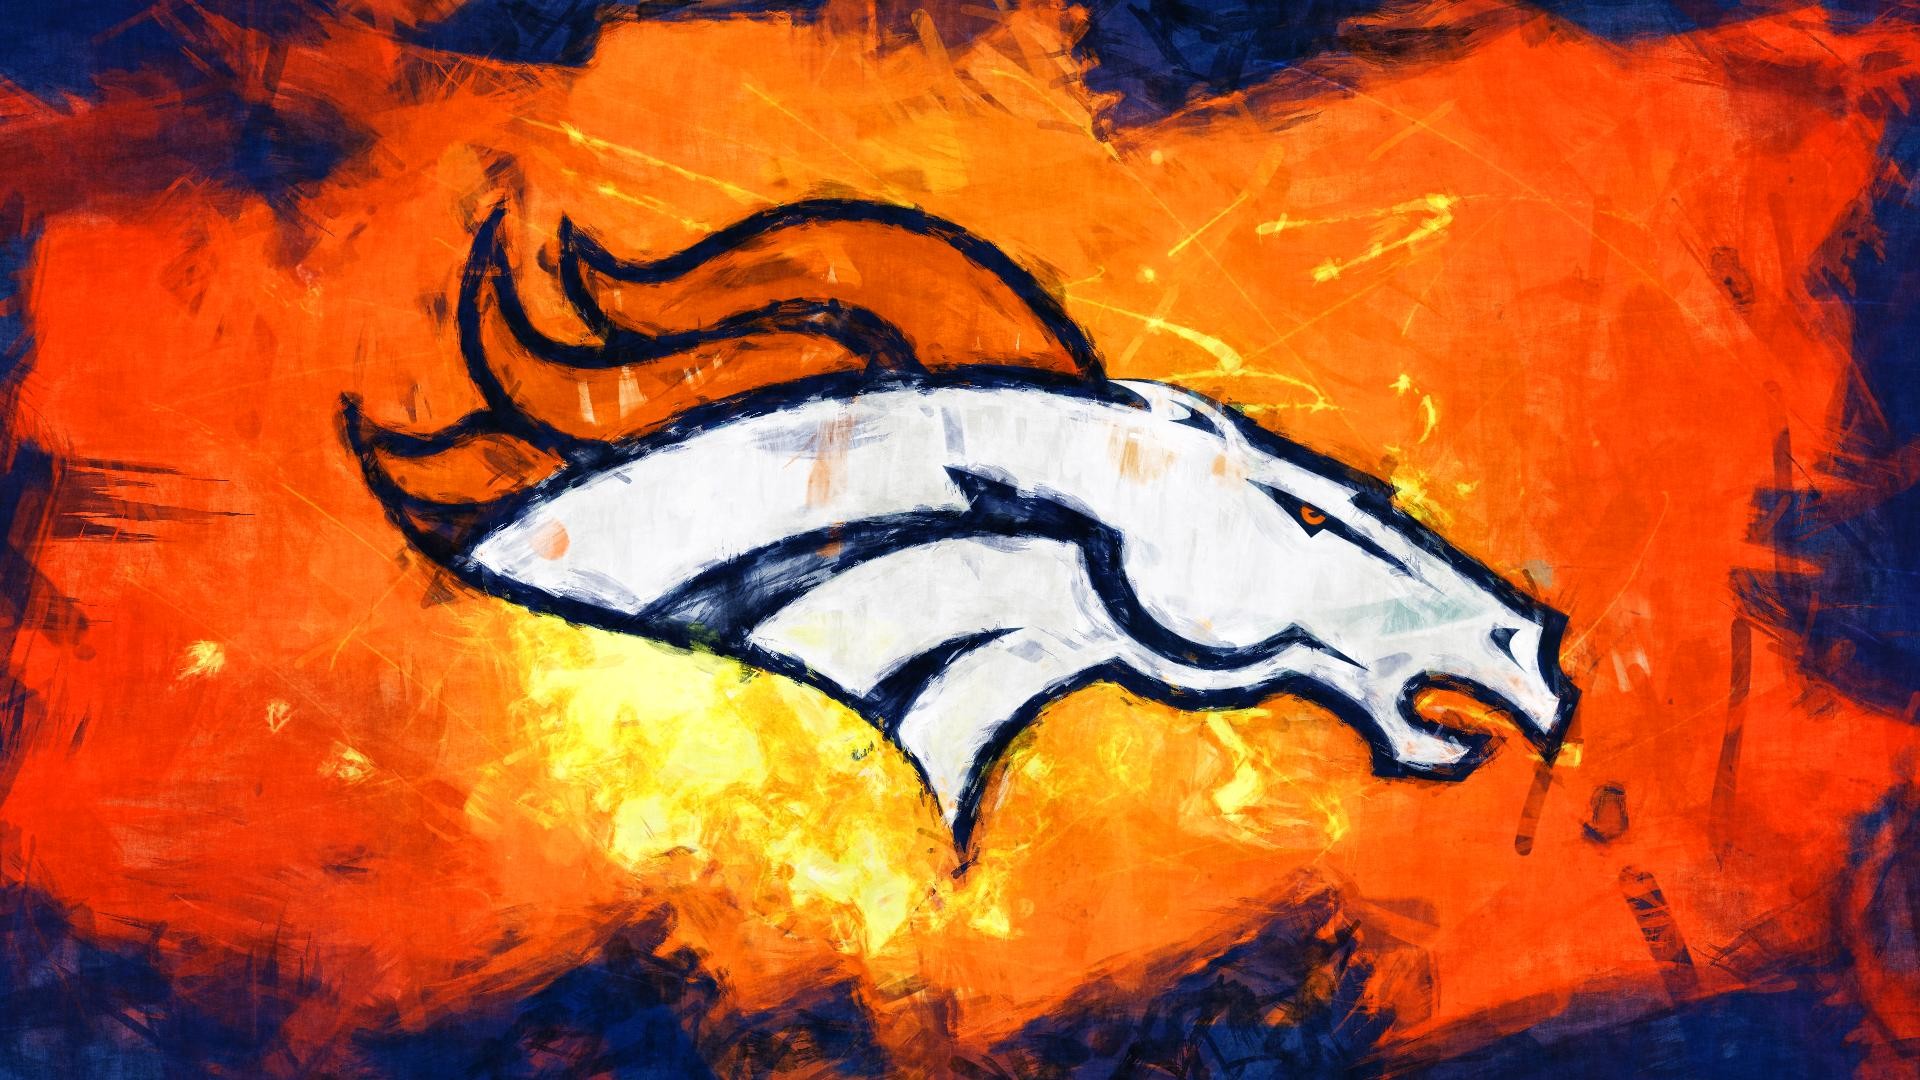 Denver Broncos Wallpaper Screensavers Image